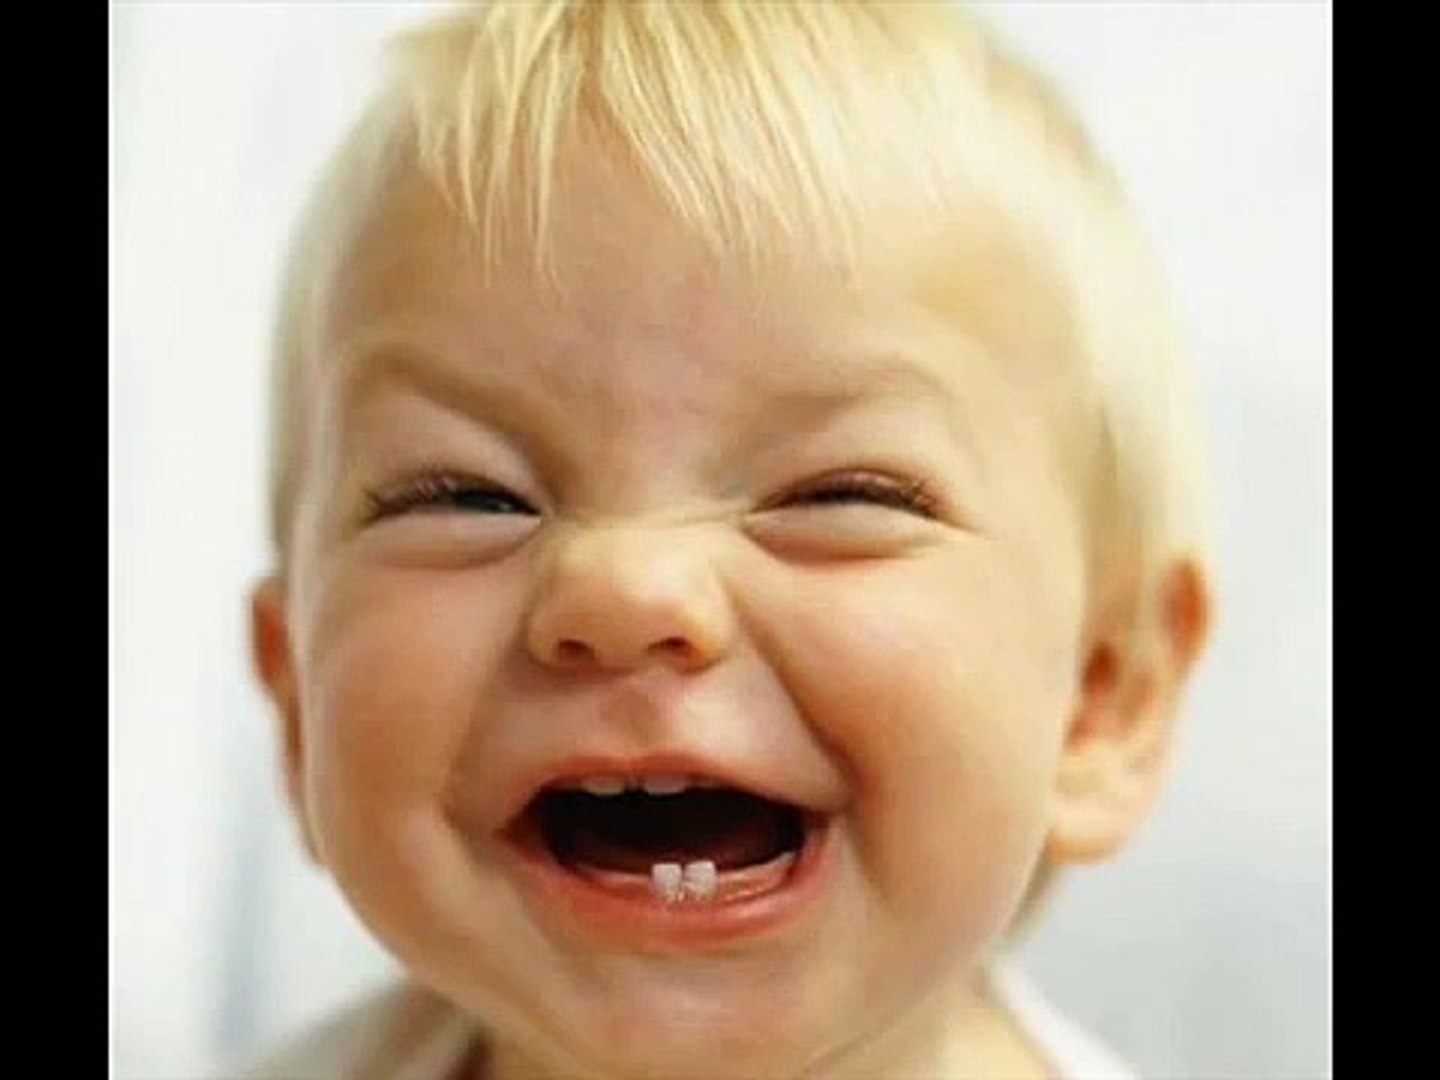 Komik Bebek Gülüşü - Dailymotion Video